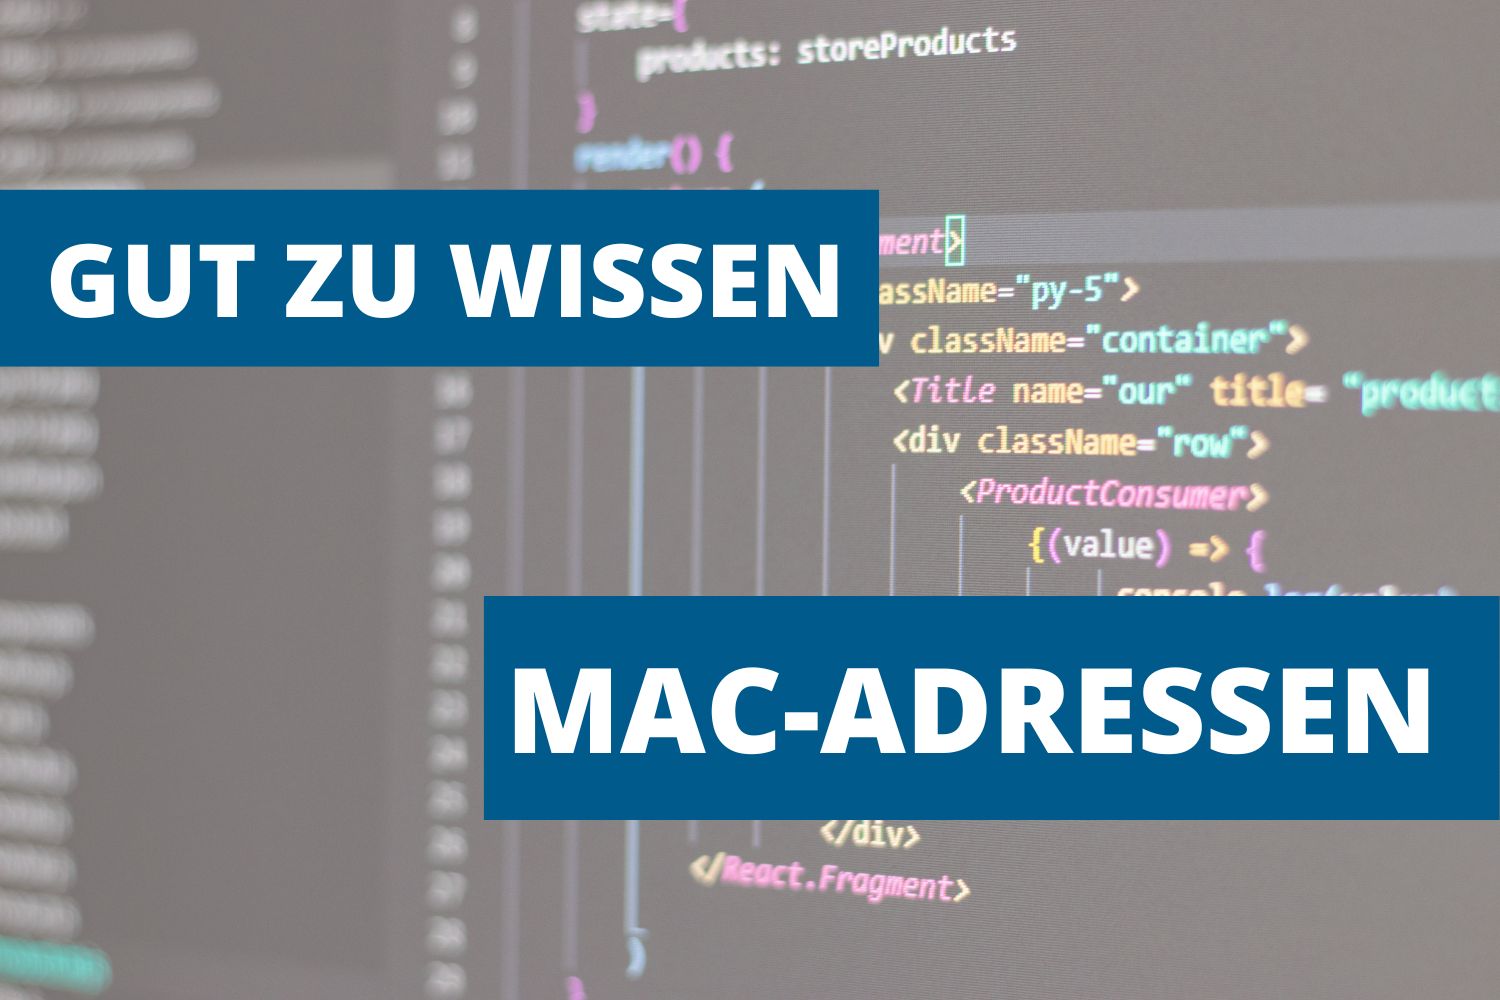 Gut zu wissen: Was sind MAC-Adressen?